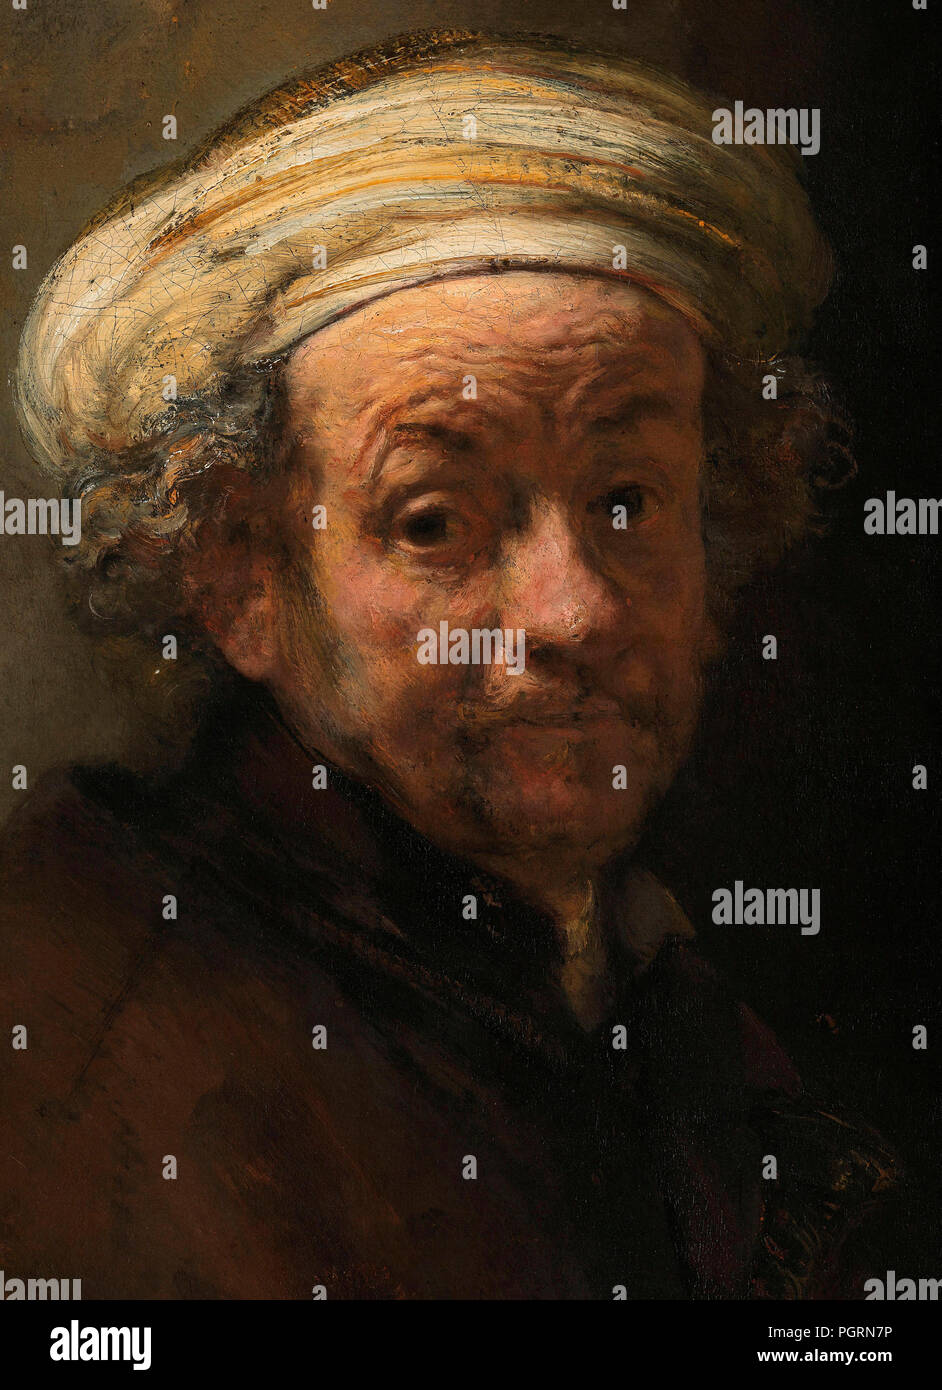 Rembrandt Harmenszoon van Rijn, 1606-1669, deutscher Künstler. Detail der Selbstportrait als der Apostel Paulus. Malerei vom 1661. Rijksmuseum, Amsterdam, Niederlande. Stockfoto